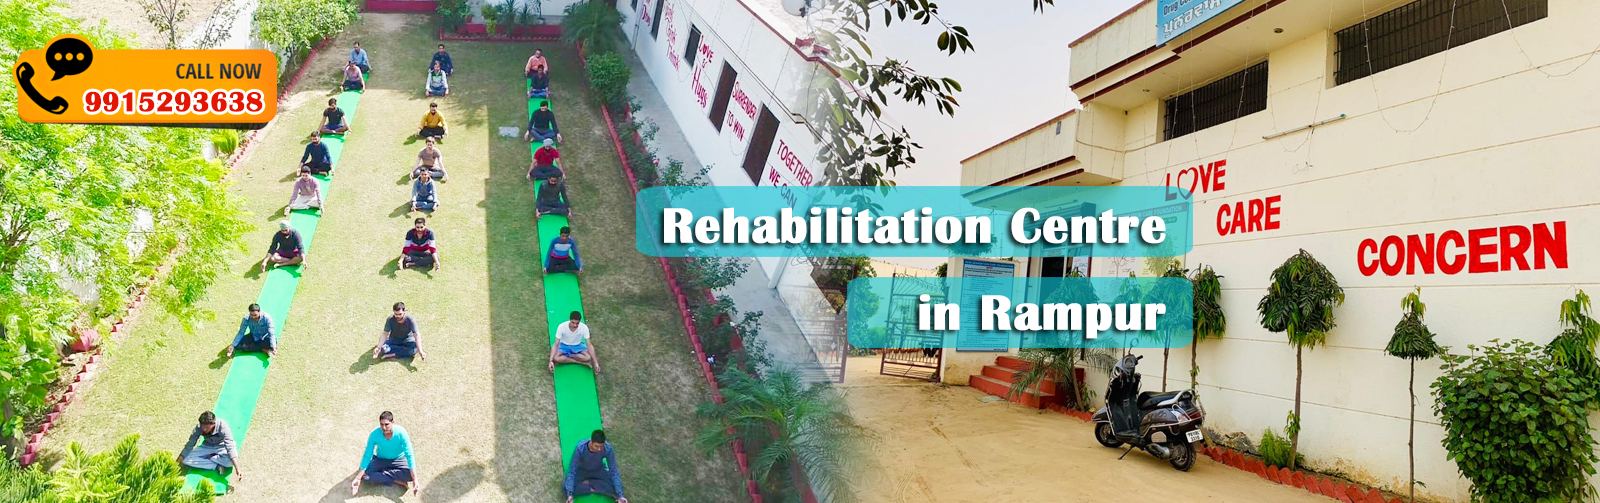 Rehabilitation Centre in Rampur